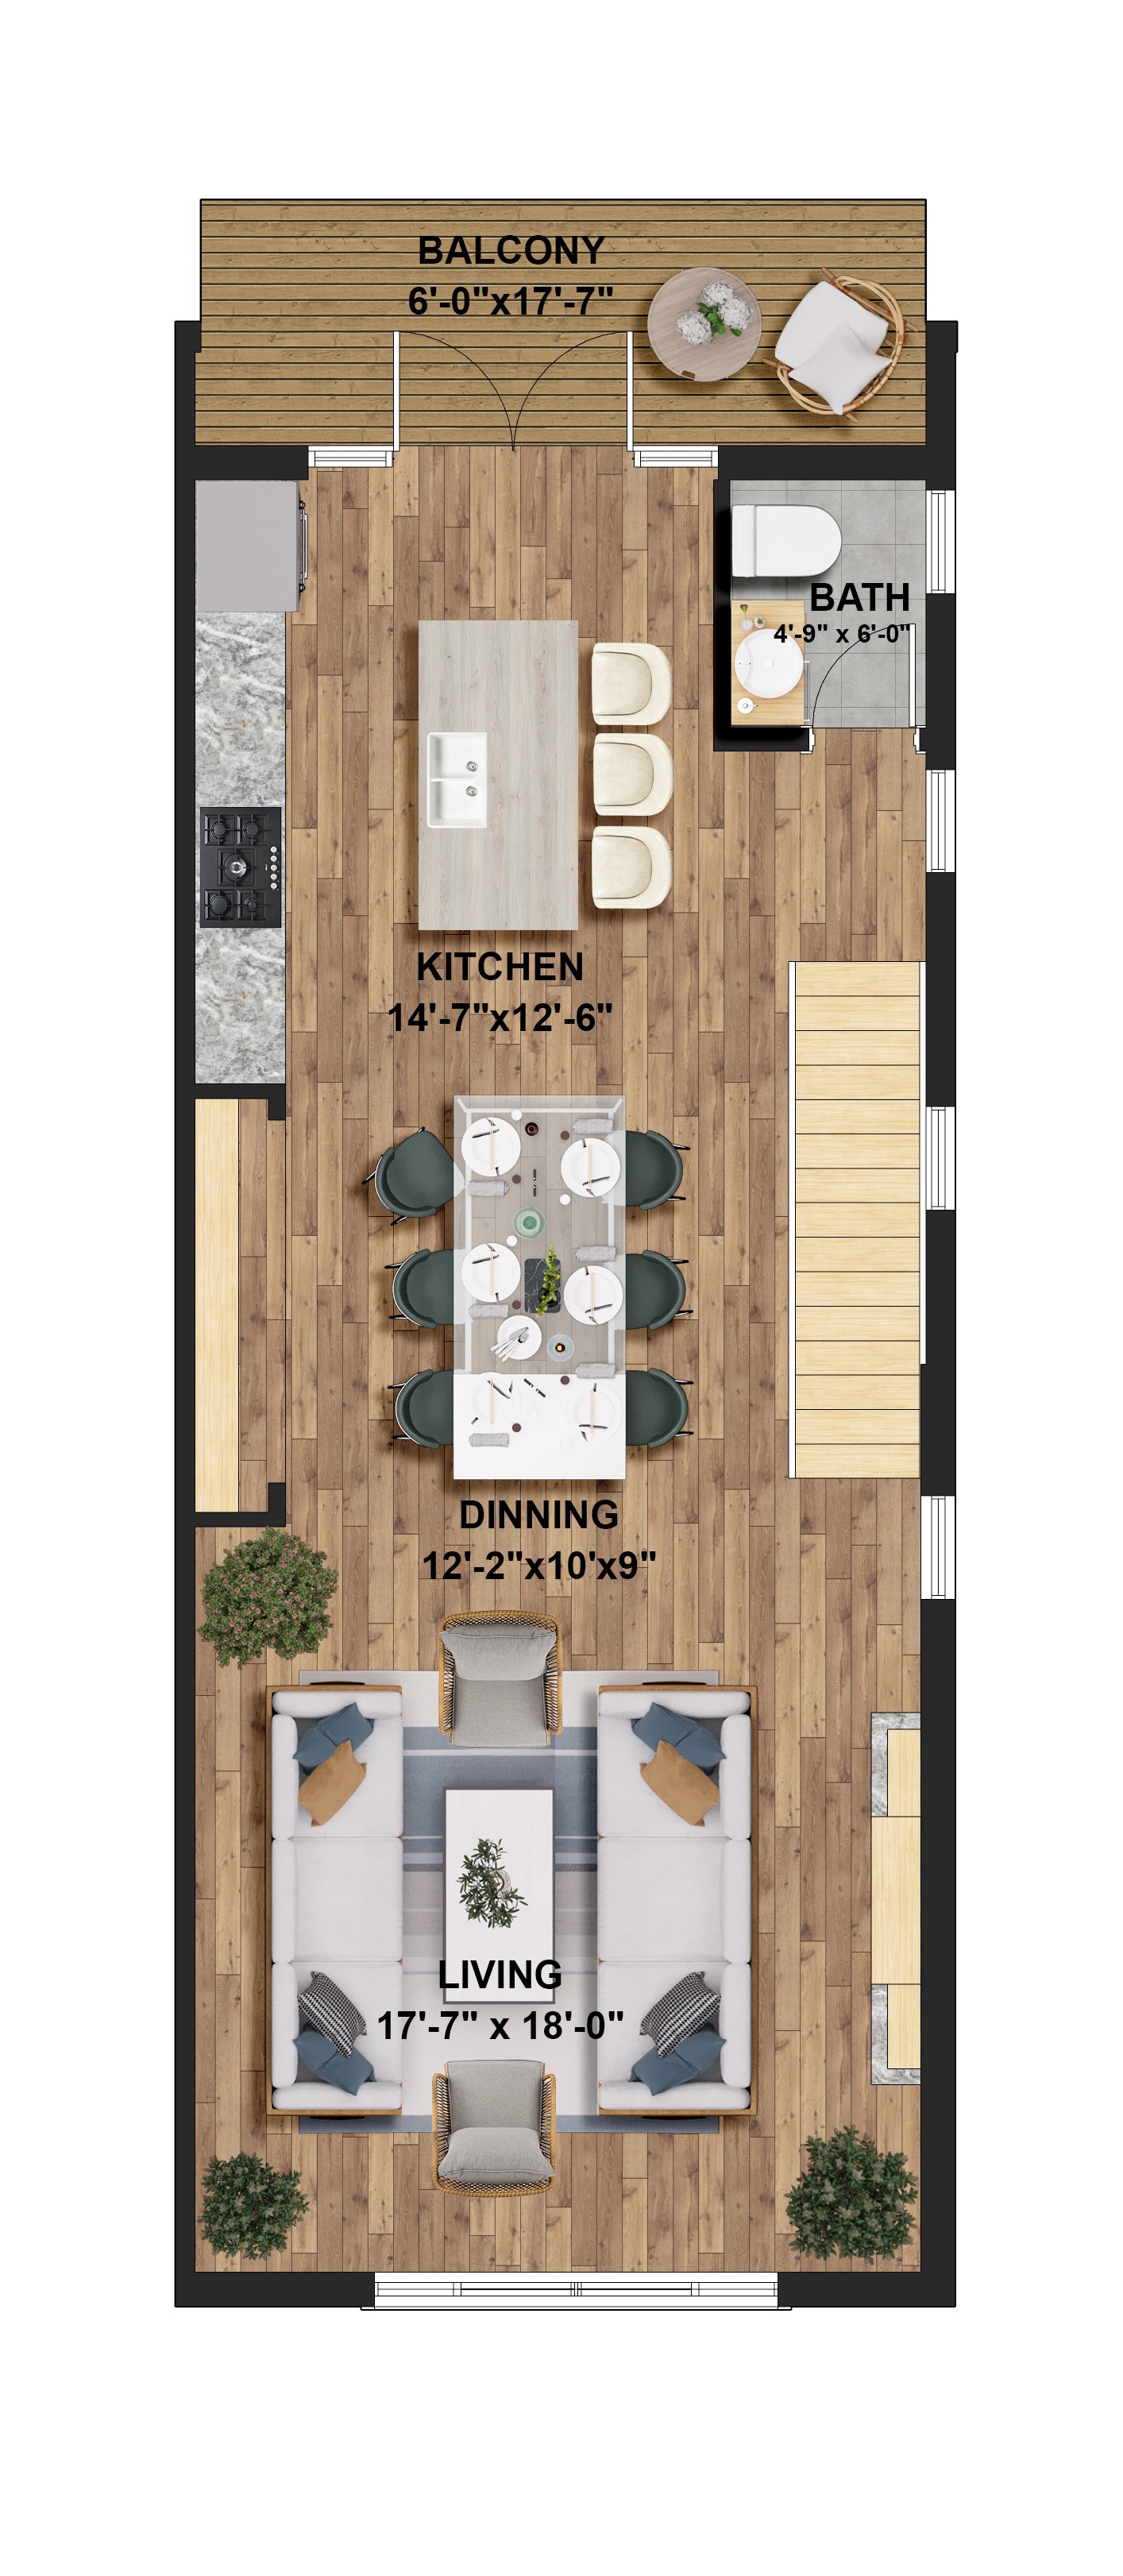 Floor_2 - Kitchen, LR, DR, Porch.jpeg